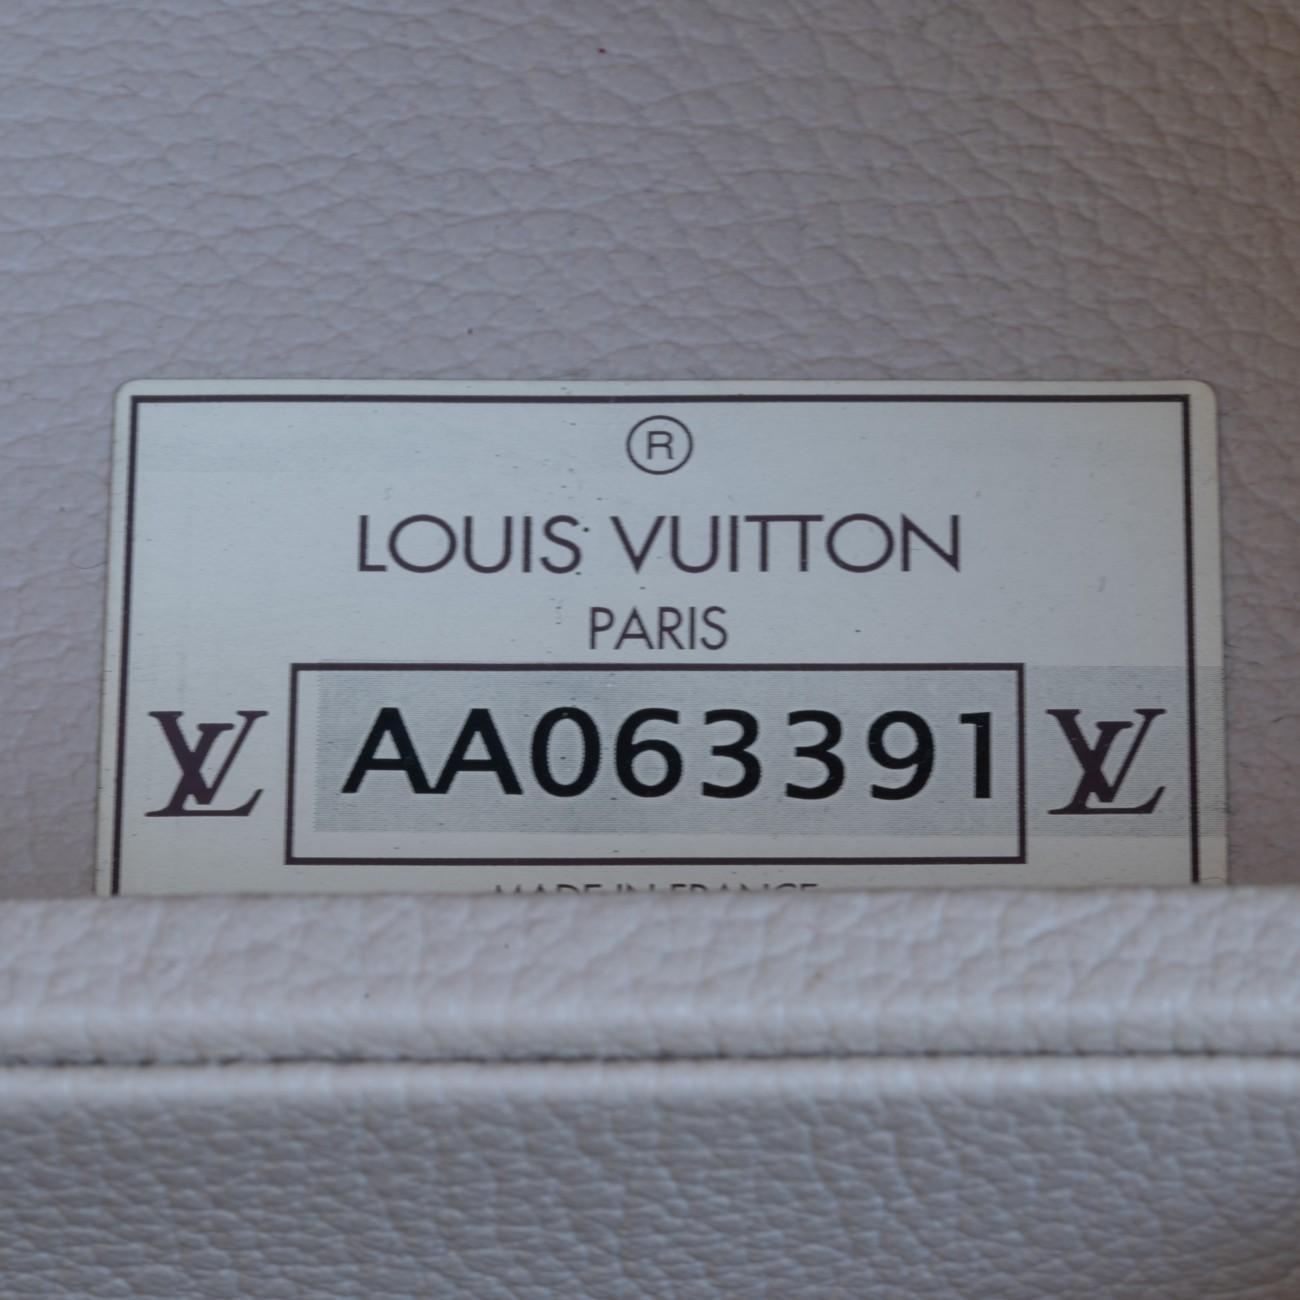 Louis Vuitton Stokowski Secretaire Trunk, circa 2007 1